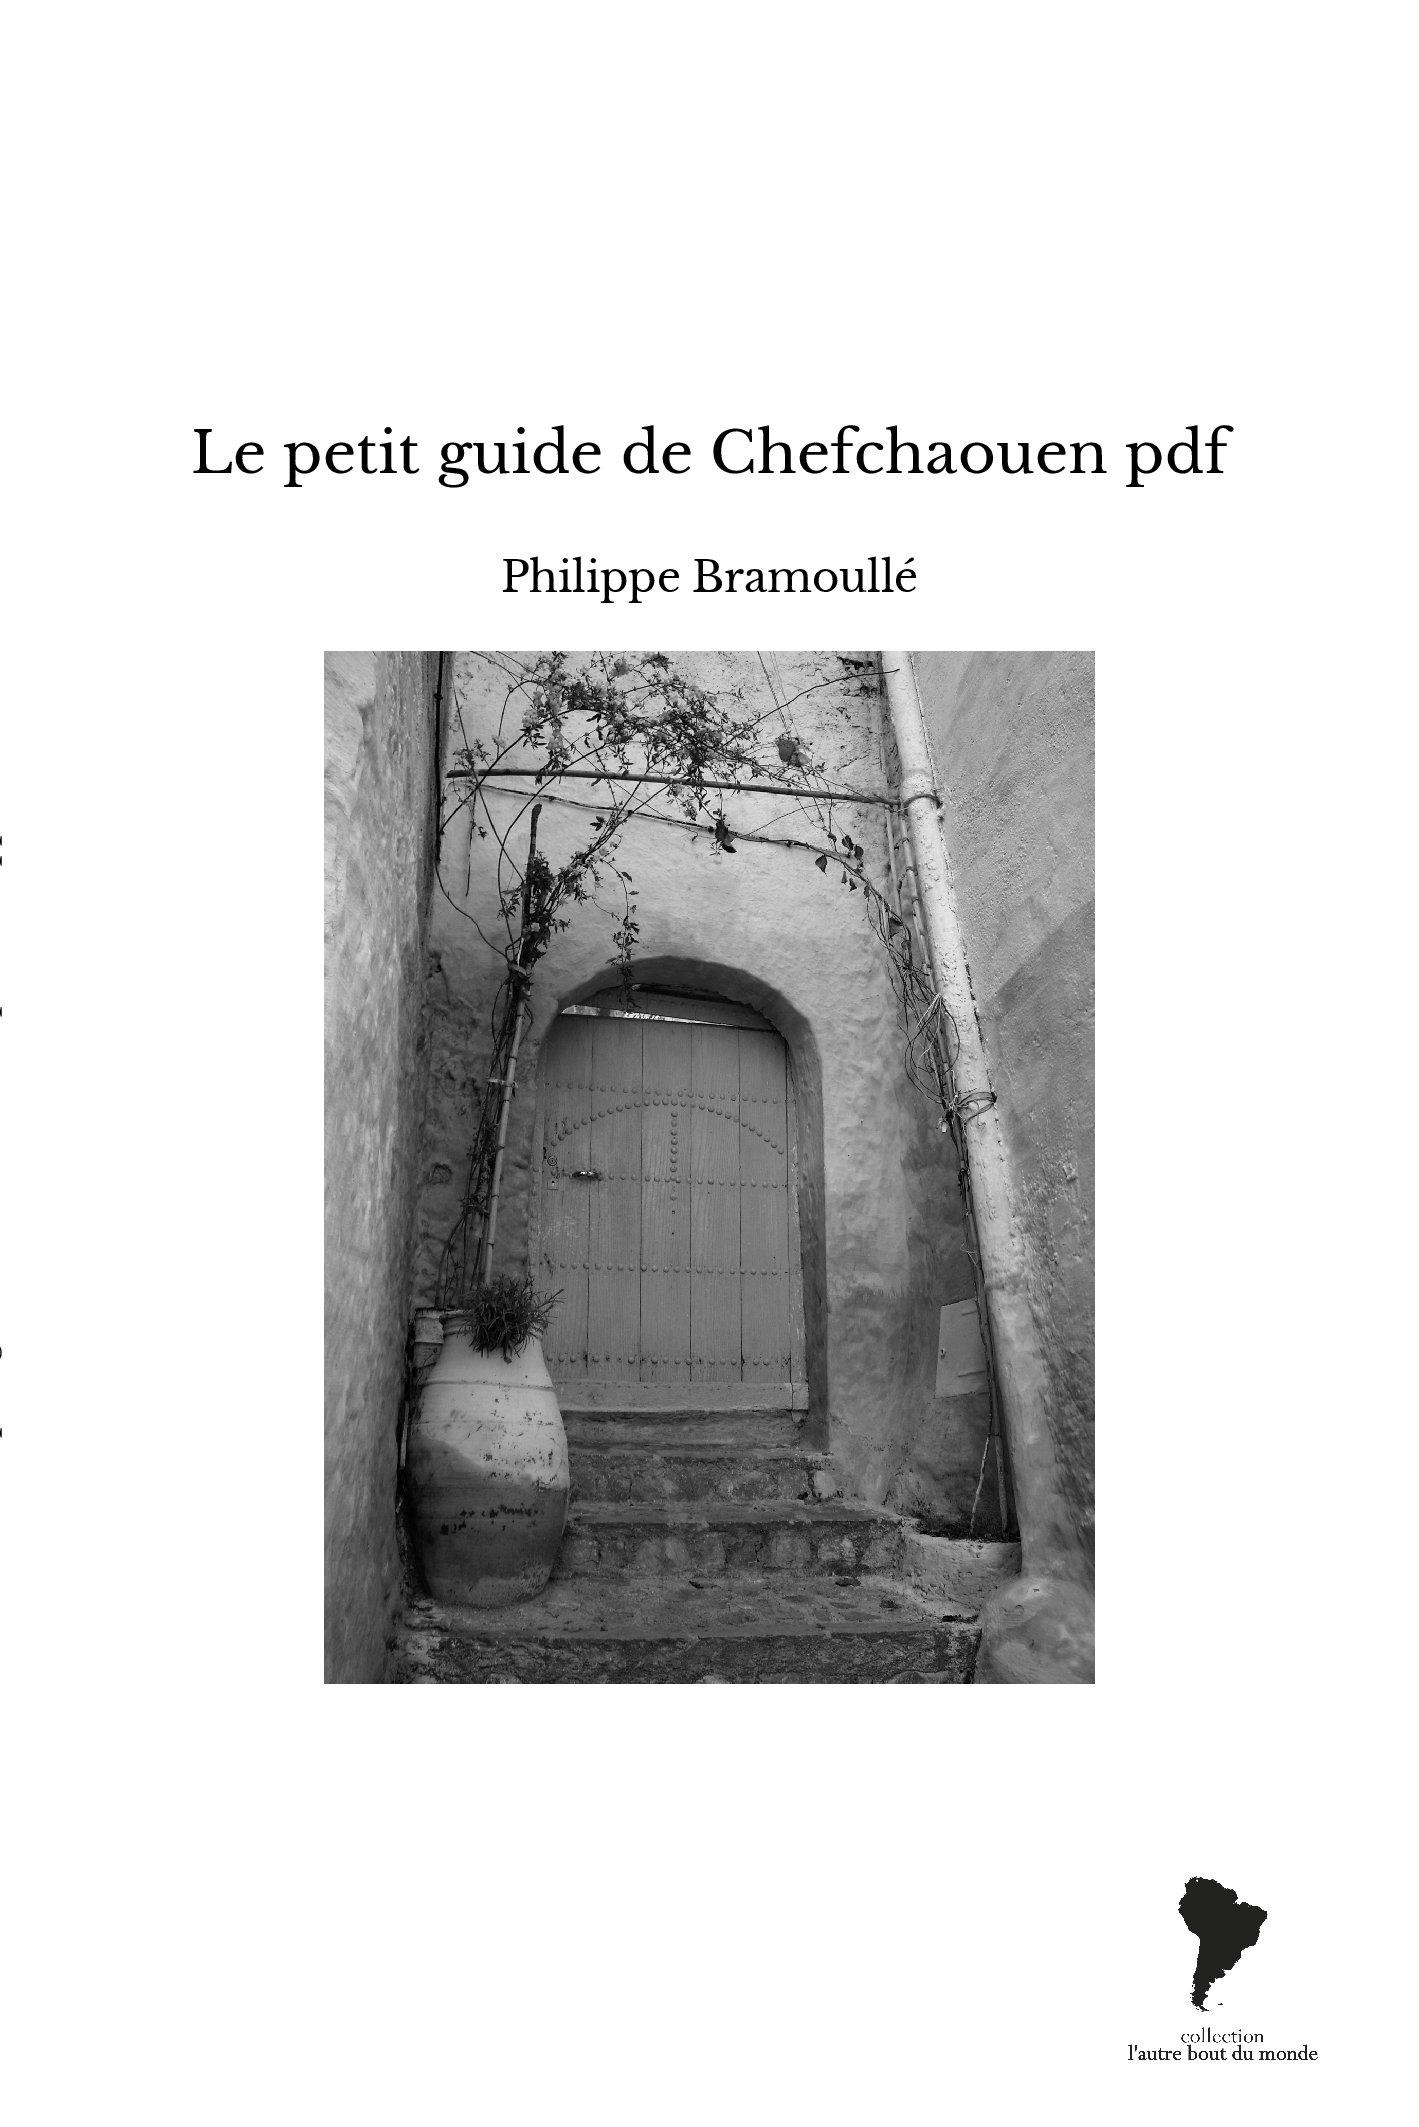 Le petit guide de Chefchaouen pdf